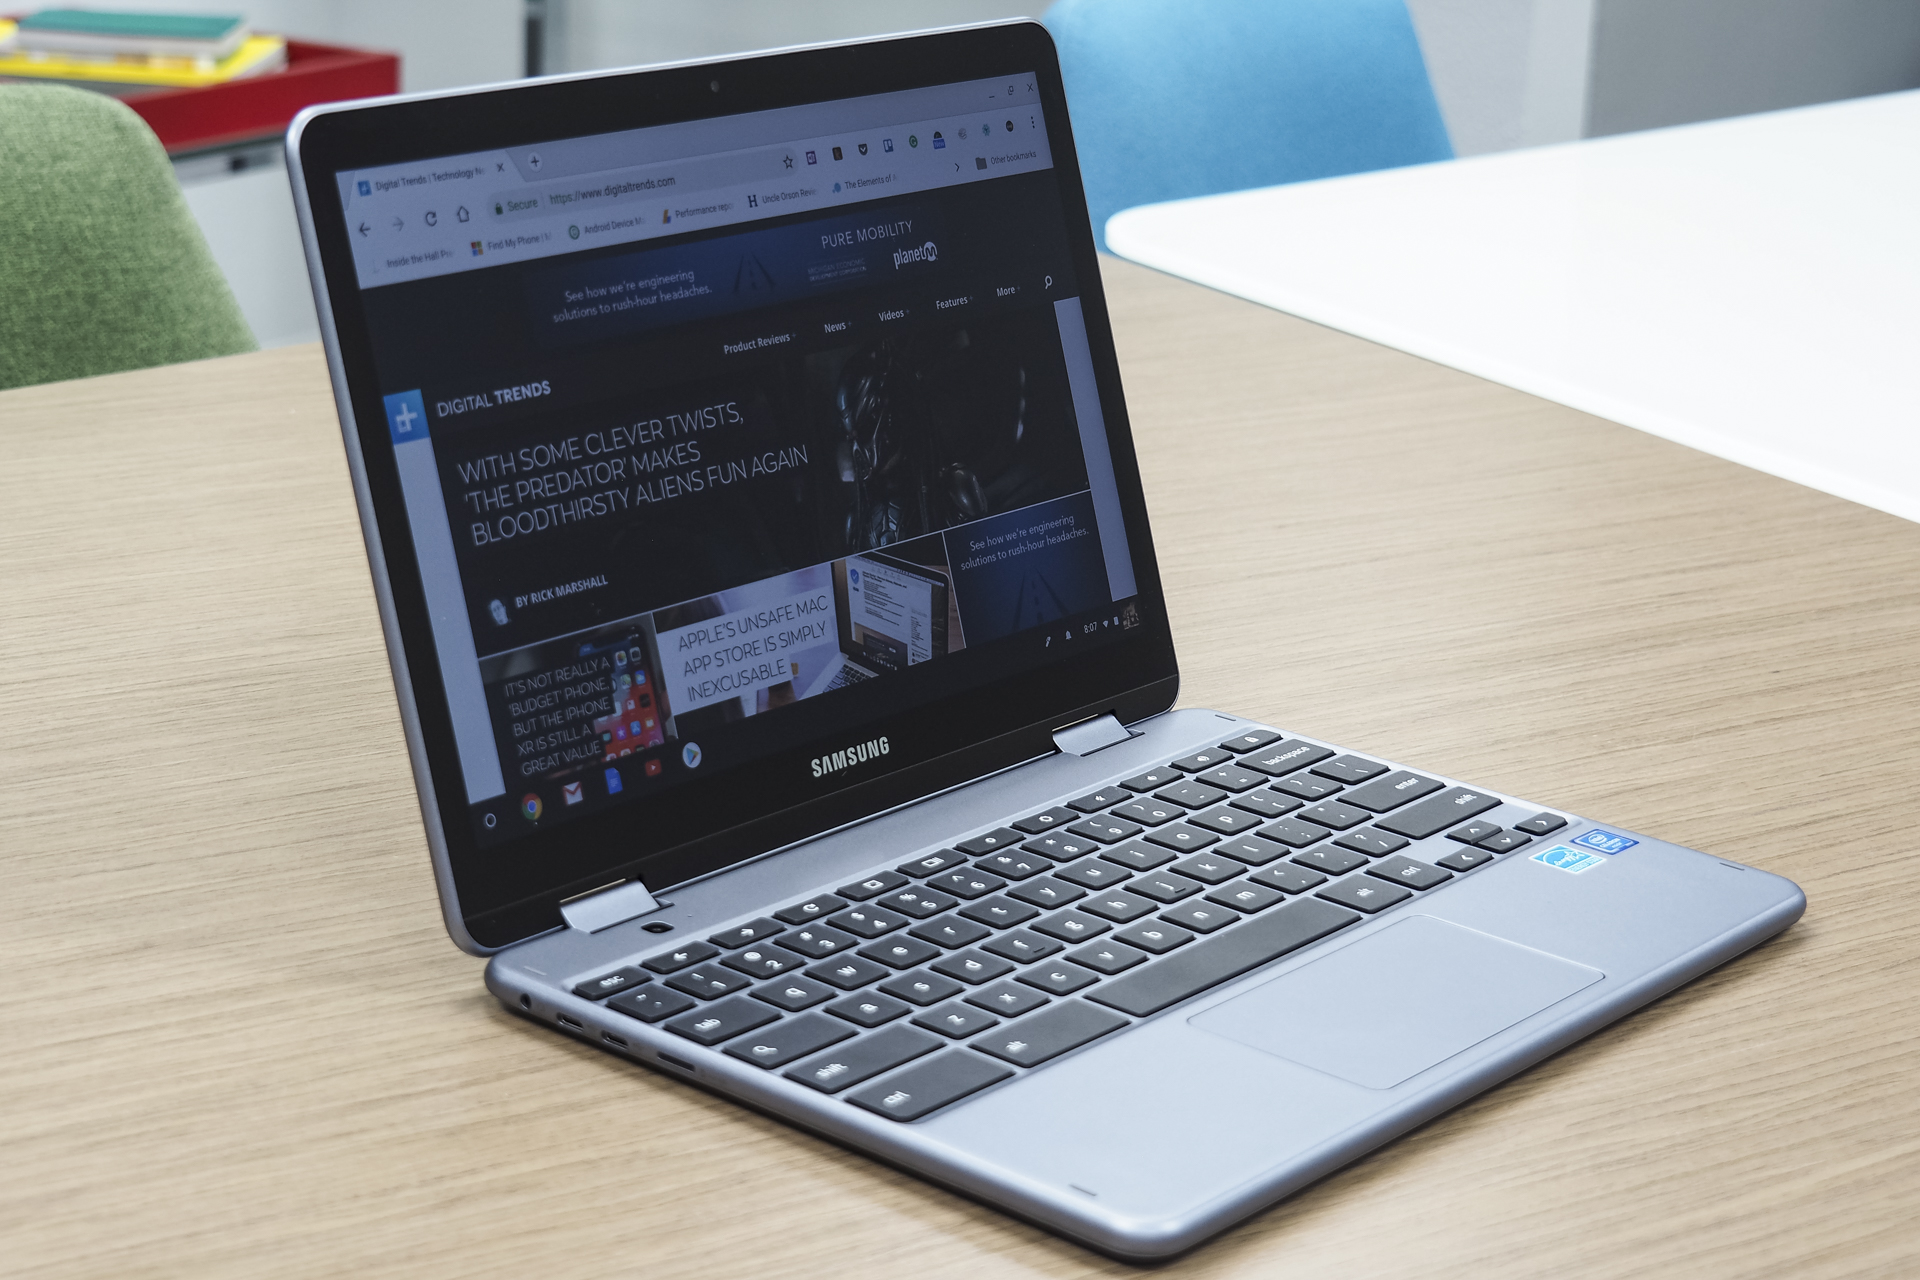 Samsung Chromebook Plus (V2) review: A speedier premium Chrome 2